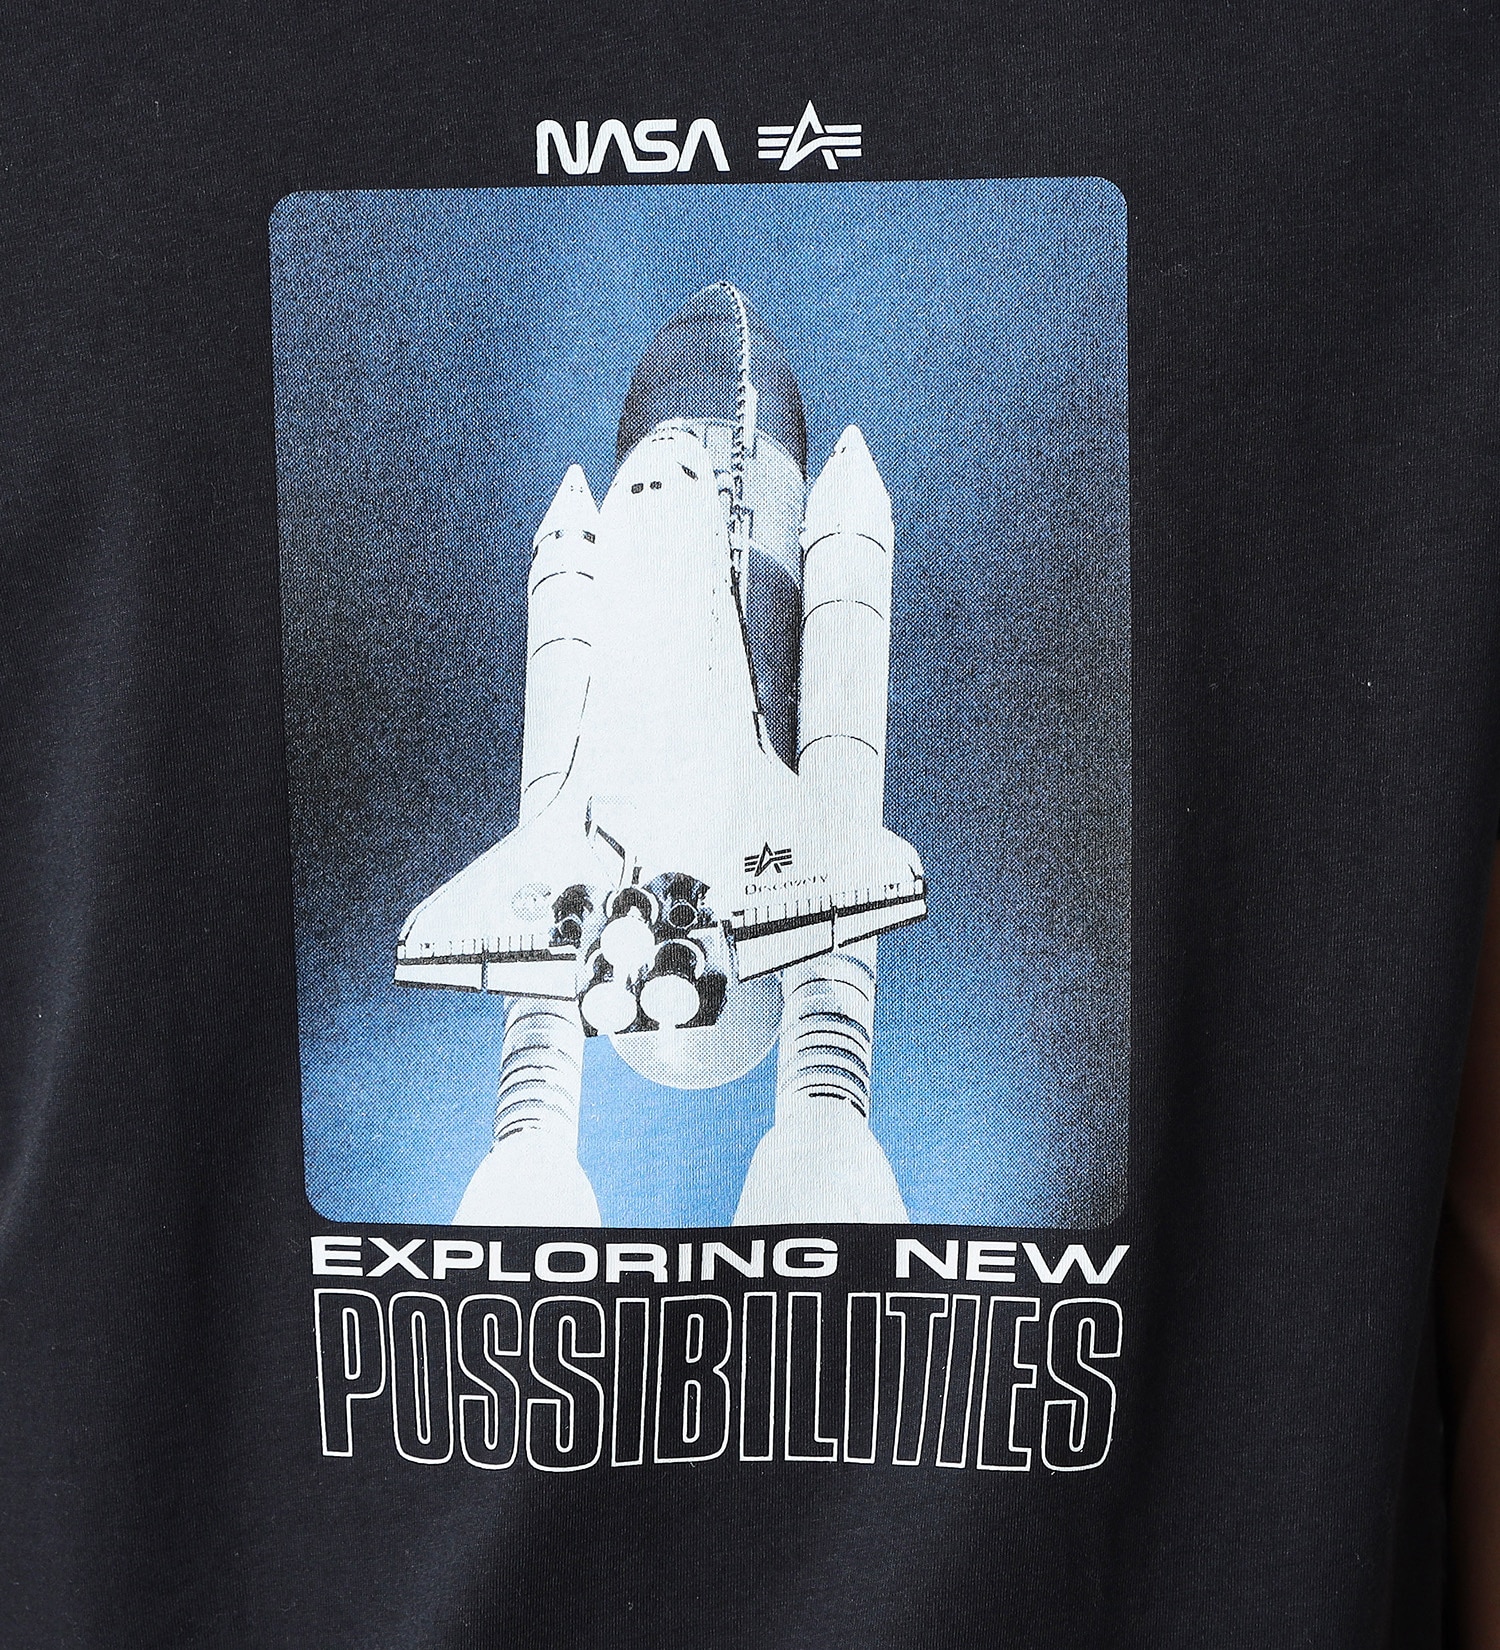 ALPHA(アルファ)の【サマーセール】【直営店限定】NASA Tシャツ(POSSIBILITIES)|トップス/Tシャツ/カットソー/メンズ|ネイビー